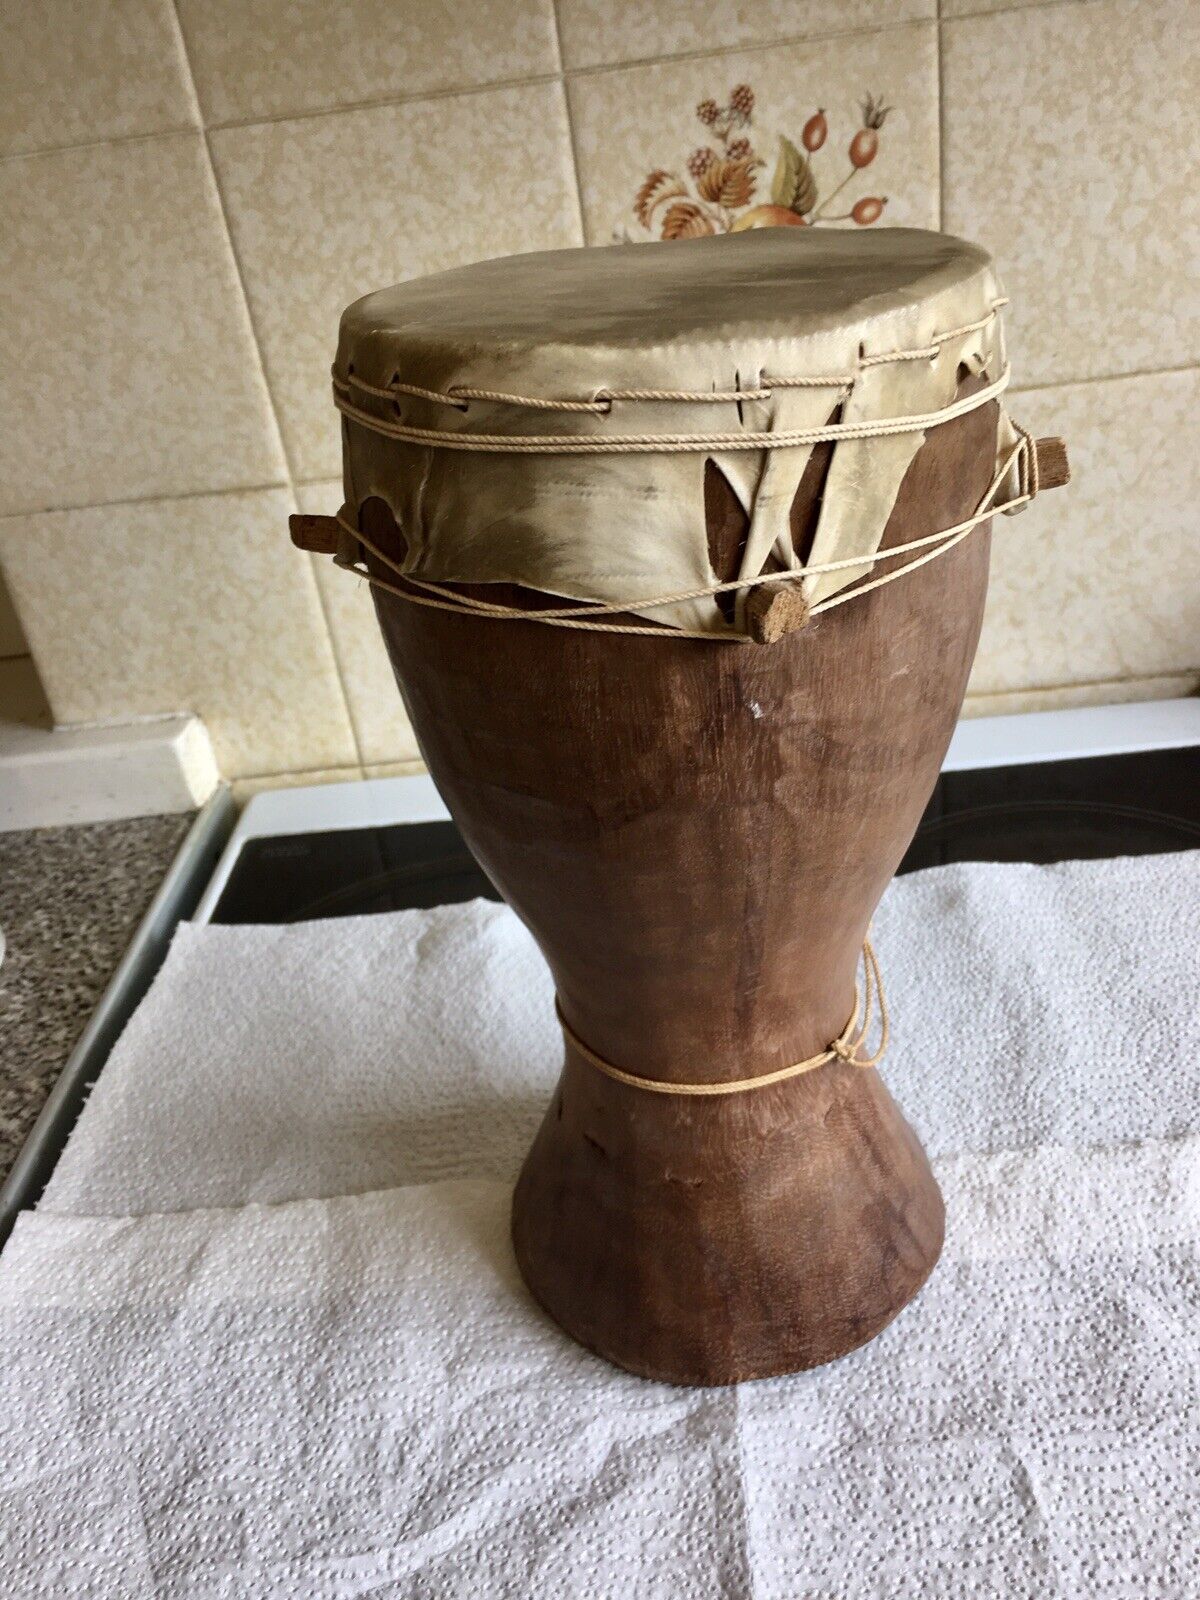 Original Vintage African Djembe Drum 28cm Tall.